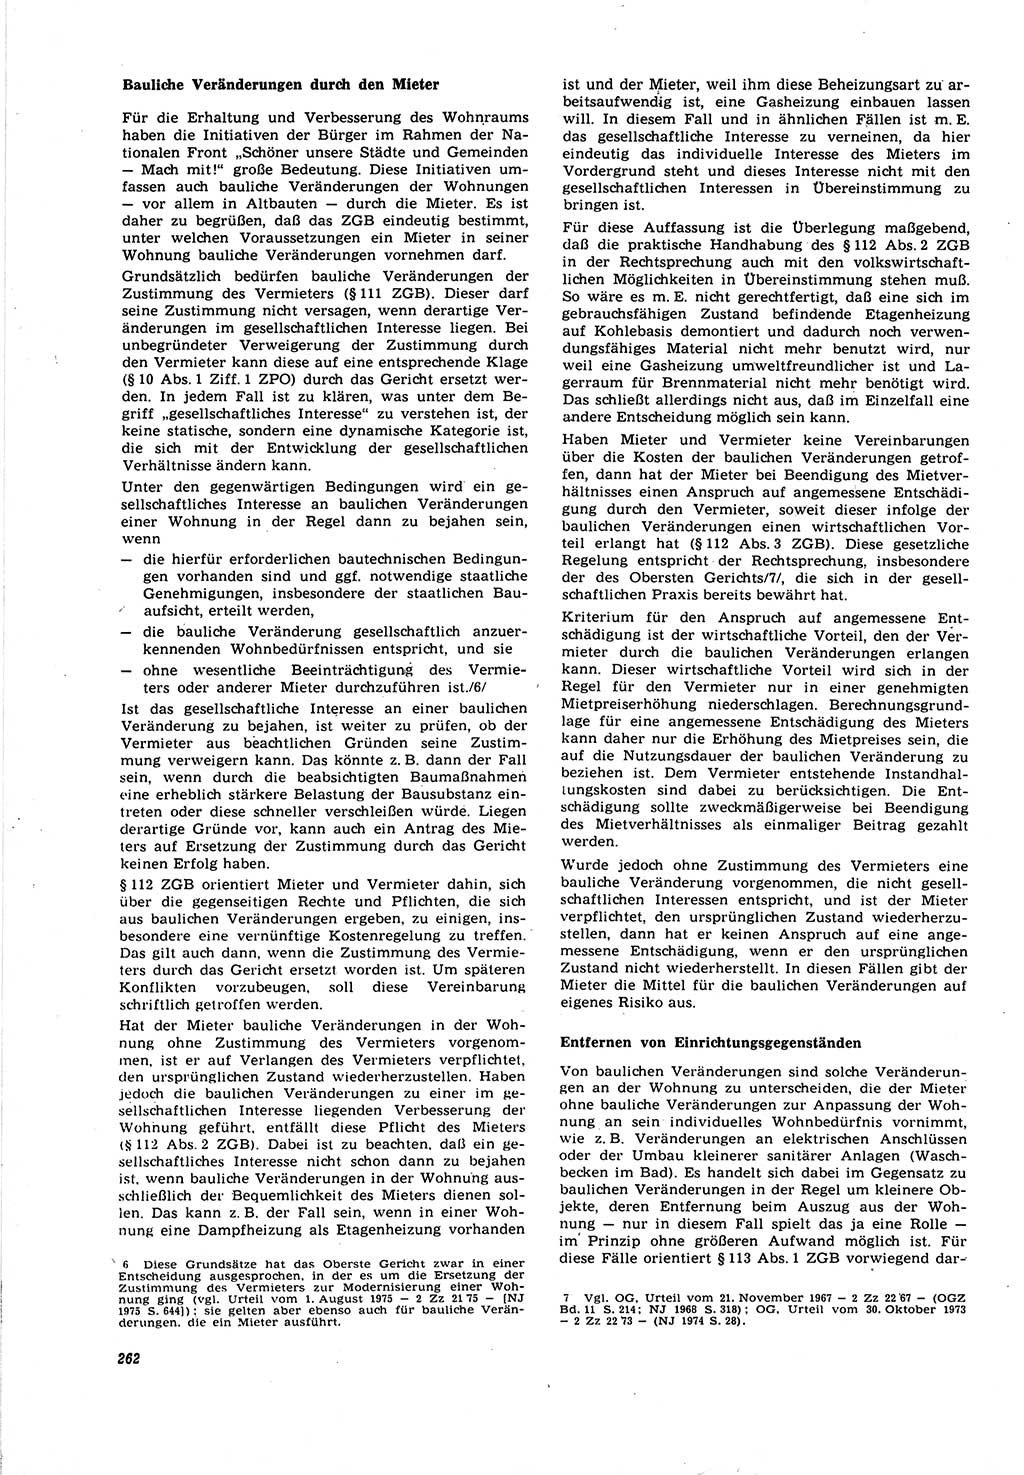 Neue Justiz (NJ), Zeitschrift für Recht und Rechtswissenschaft [Deutsche Demokratische Republik (DDR)], 30. Jahrgang 1976, Seite 262 (NJ DDR 1976, S. 262)